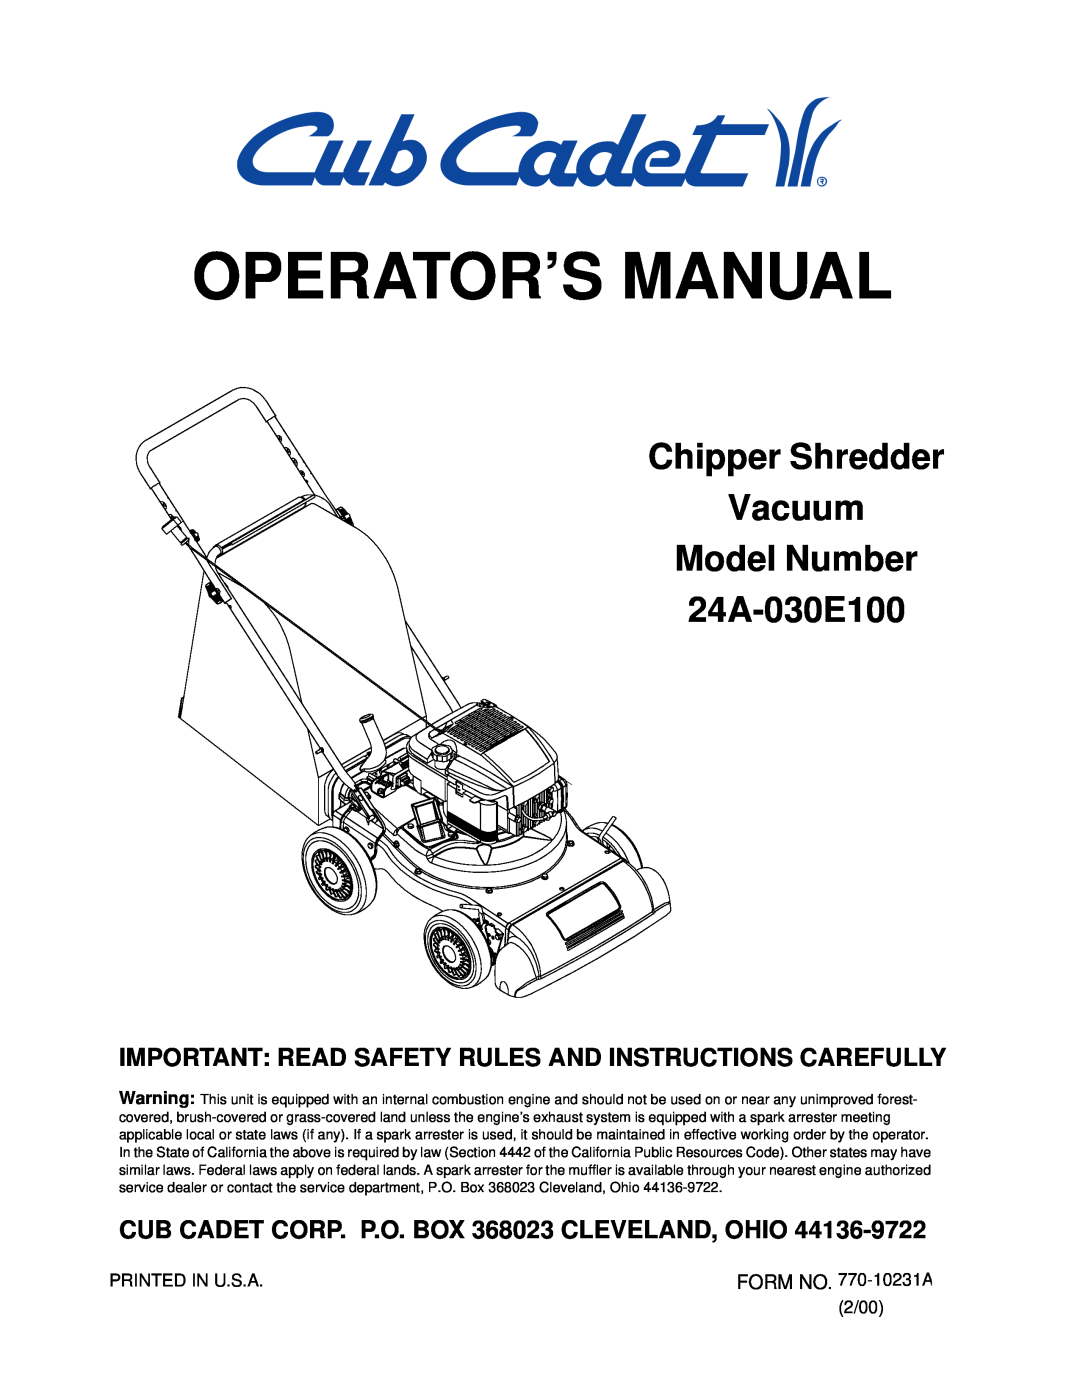 Cub Cadet manual Operator’S Manual, Chipper Shredder Vacuum Model Number 24A-030E100 